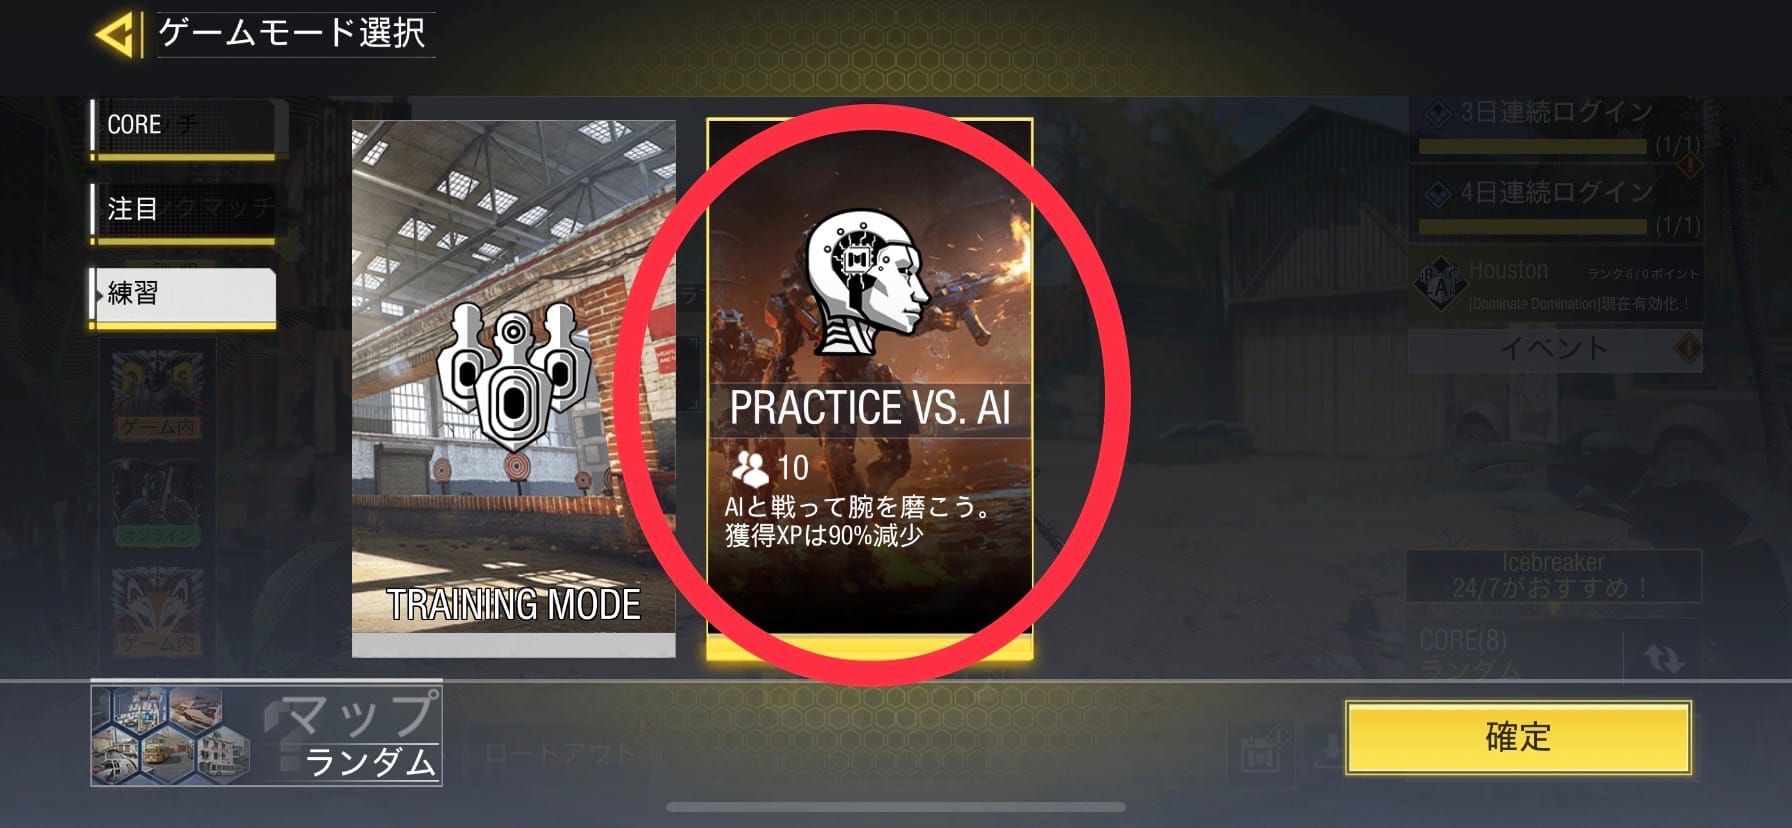 「PRACTICE VS.AI」の選び方3